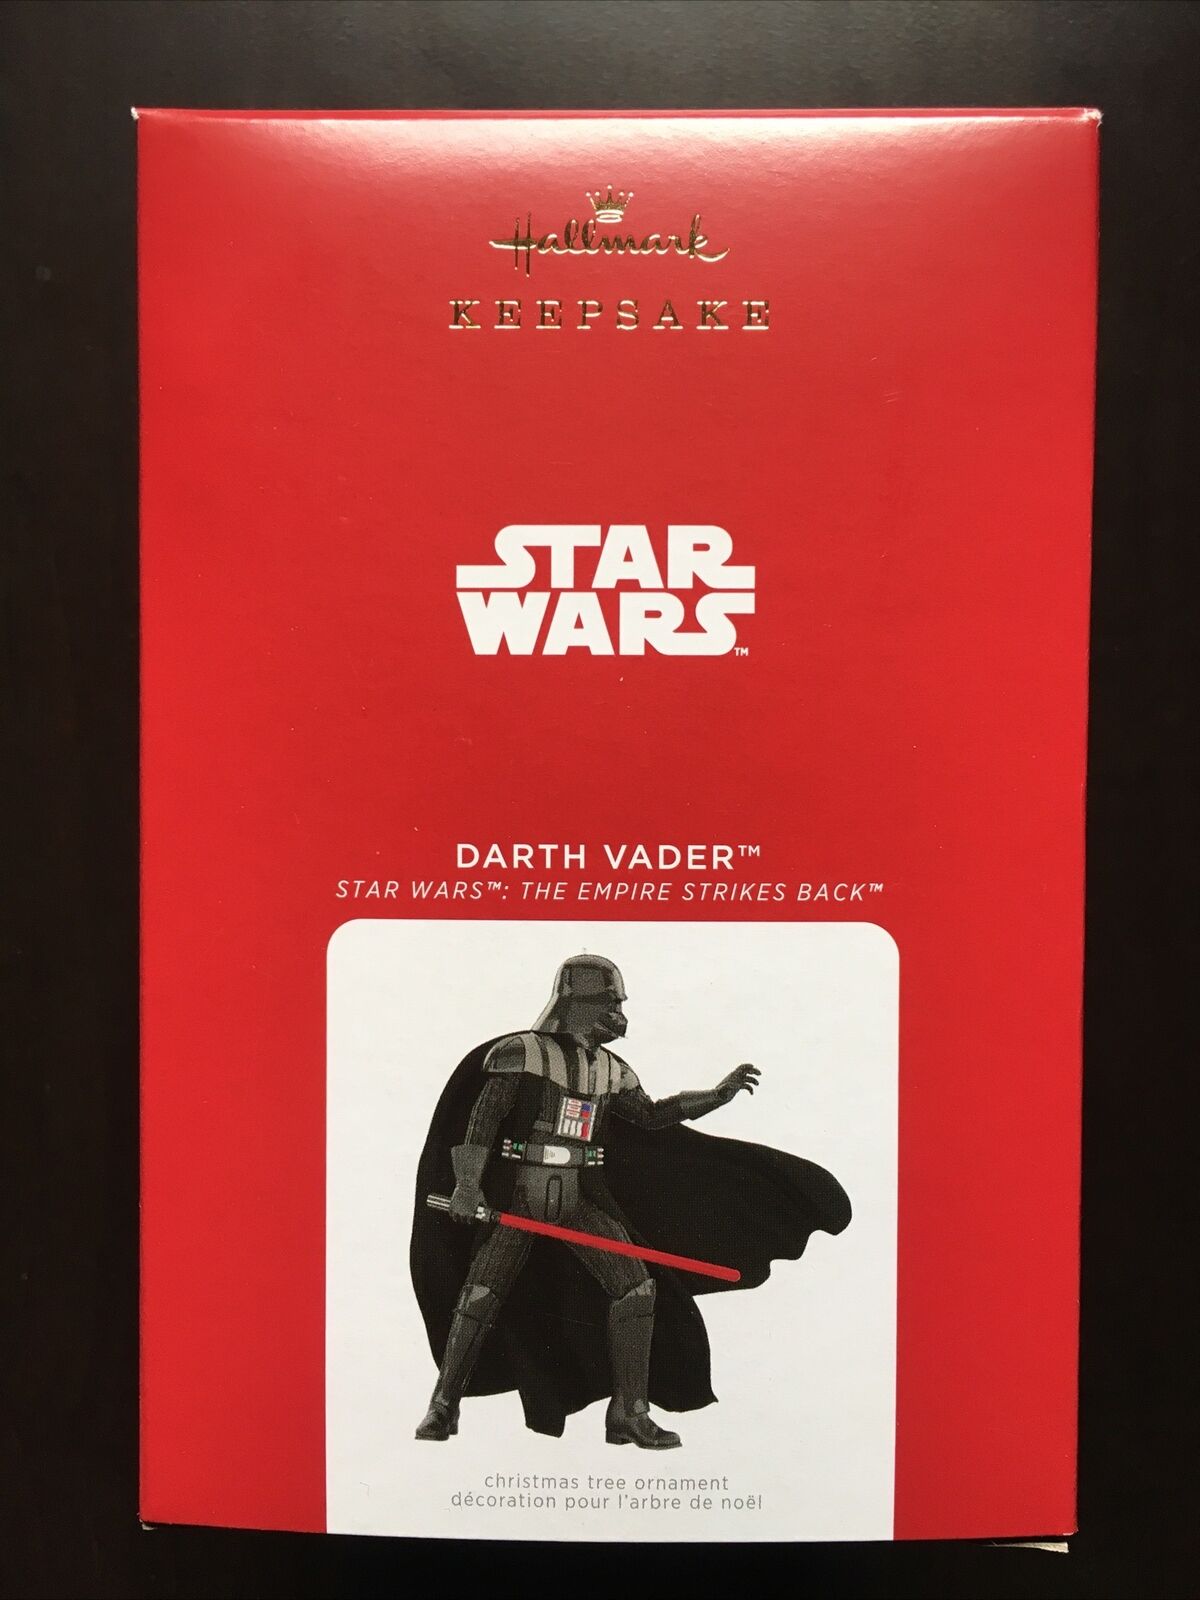 2021 Hallmark Keepsake Star Wars: The Empire Strikes Back Darth Vader Ornament